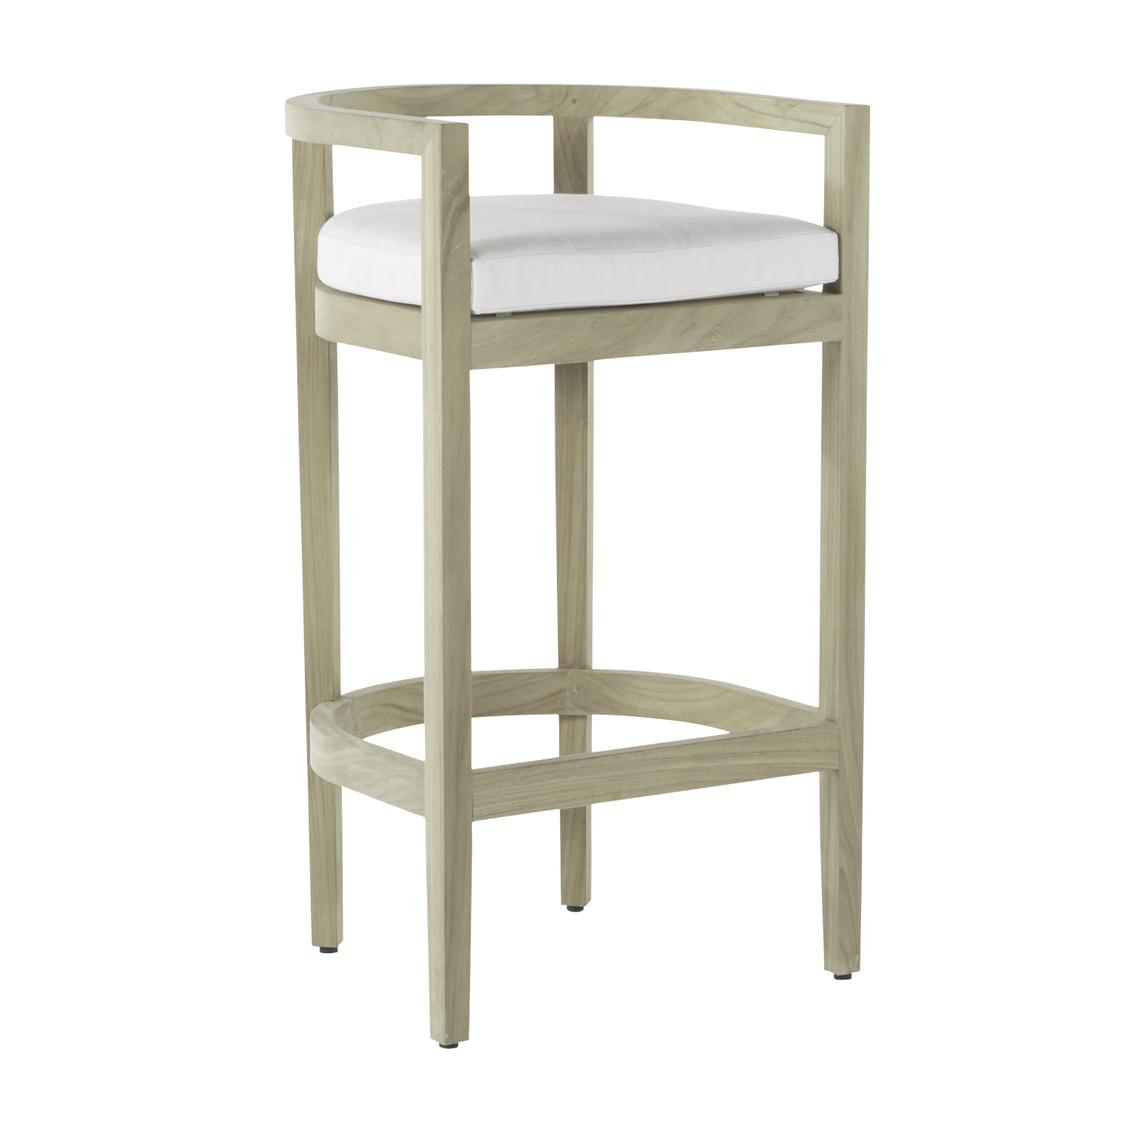 santa barbara teak 30 inch barrel bar stool in oyster teak – frame only product image